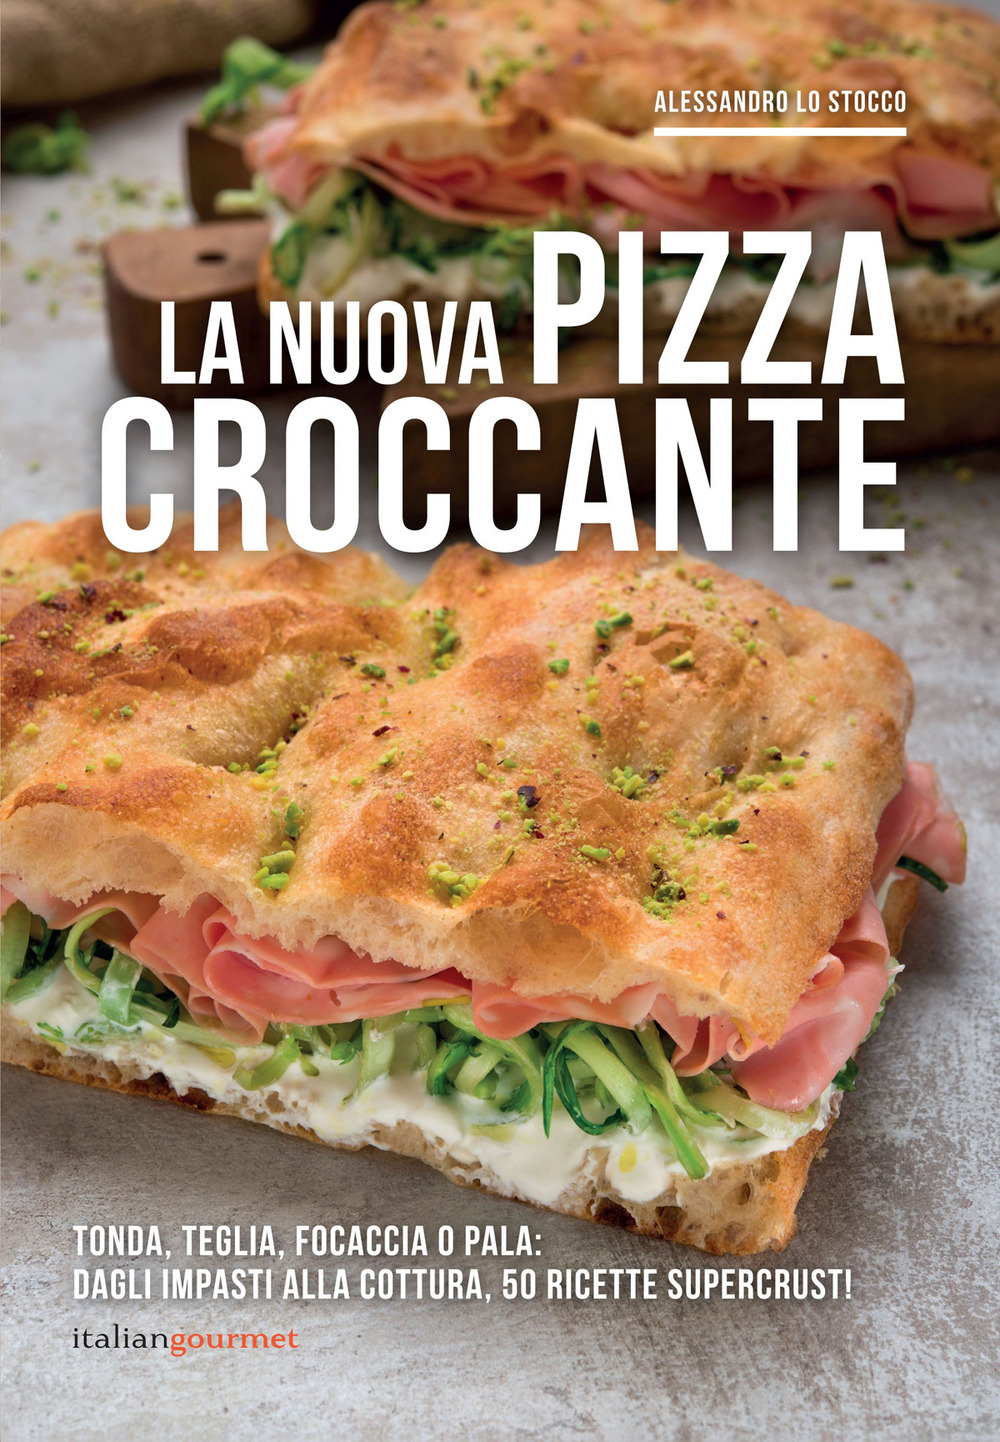 Libri Lo Stocco Alessandro - La Nuova Pizza Croccante NUOVO SIGILLATO, EDIZIONE DEL 21/06/2021 SUBITO DISPONIBILE